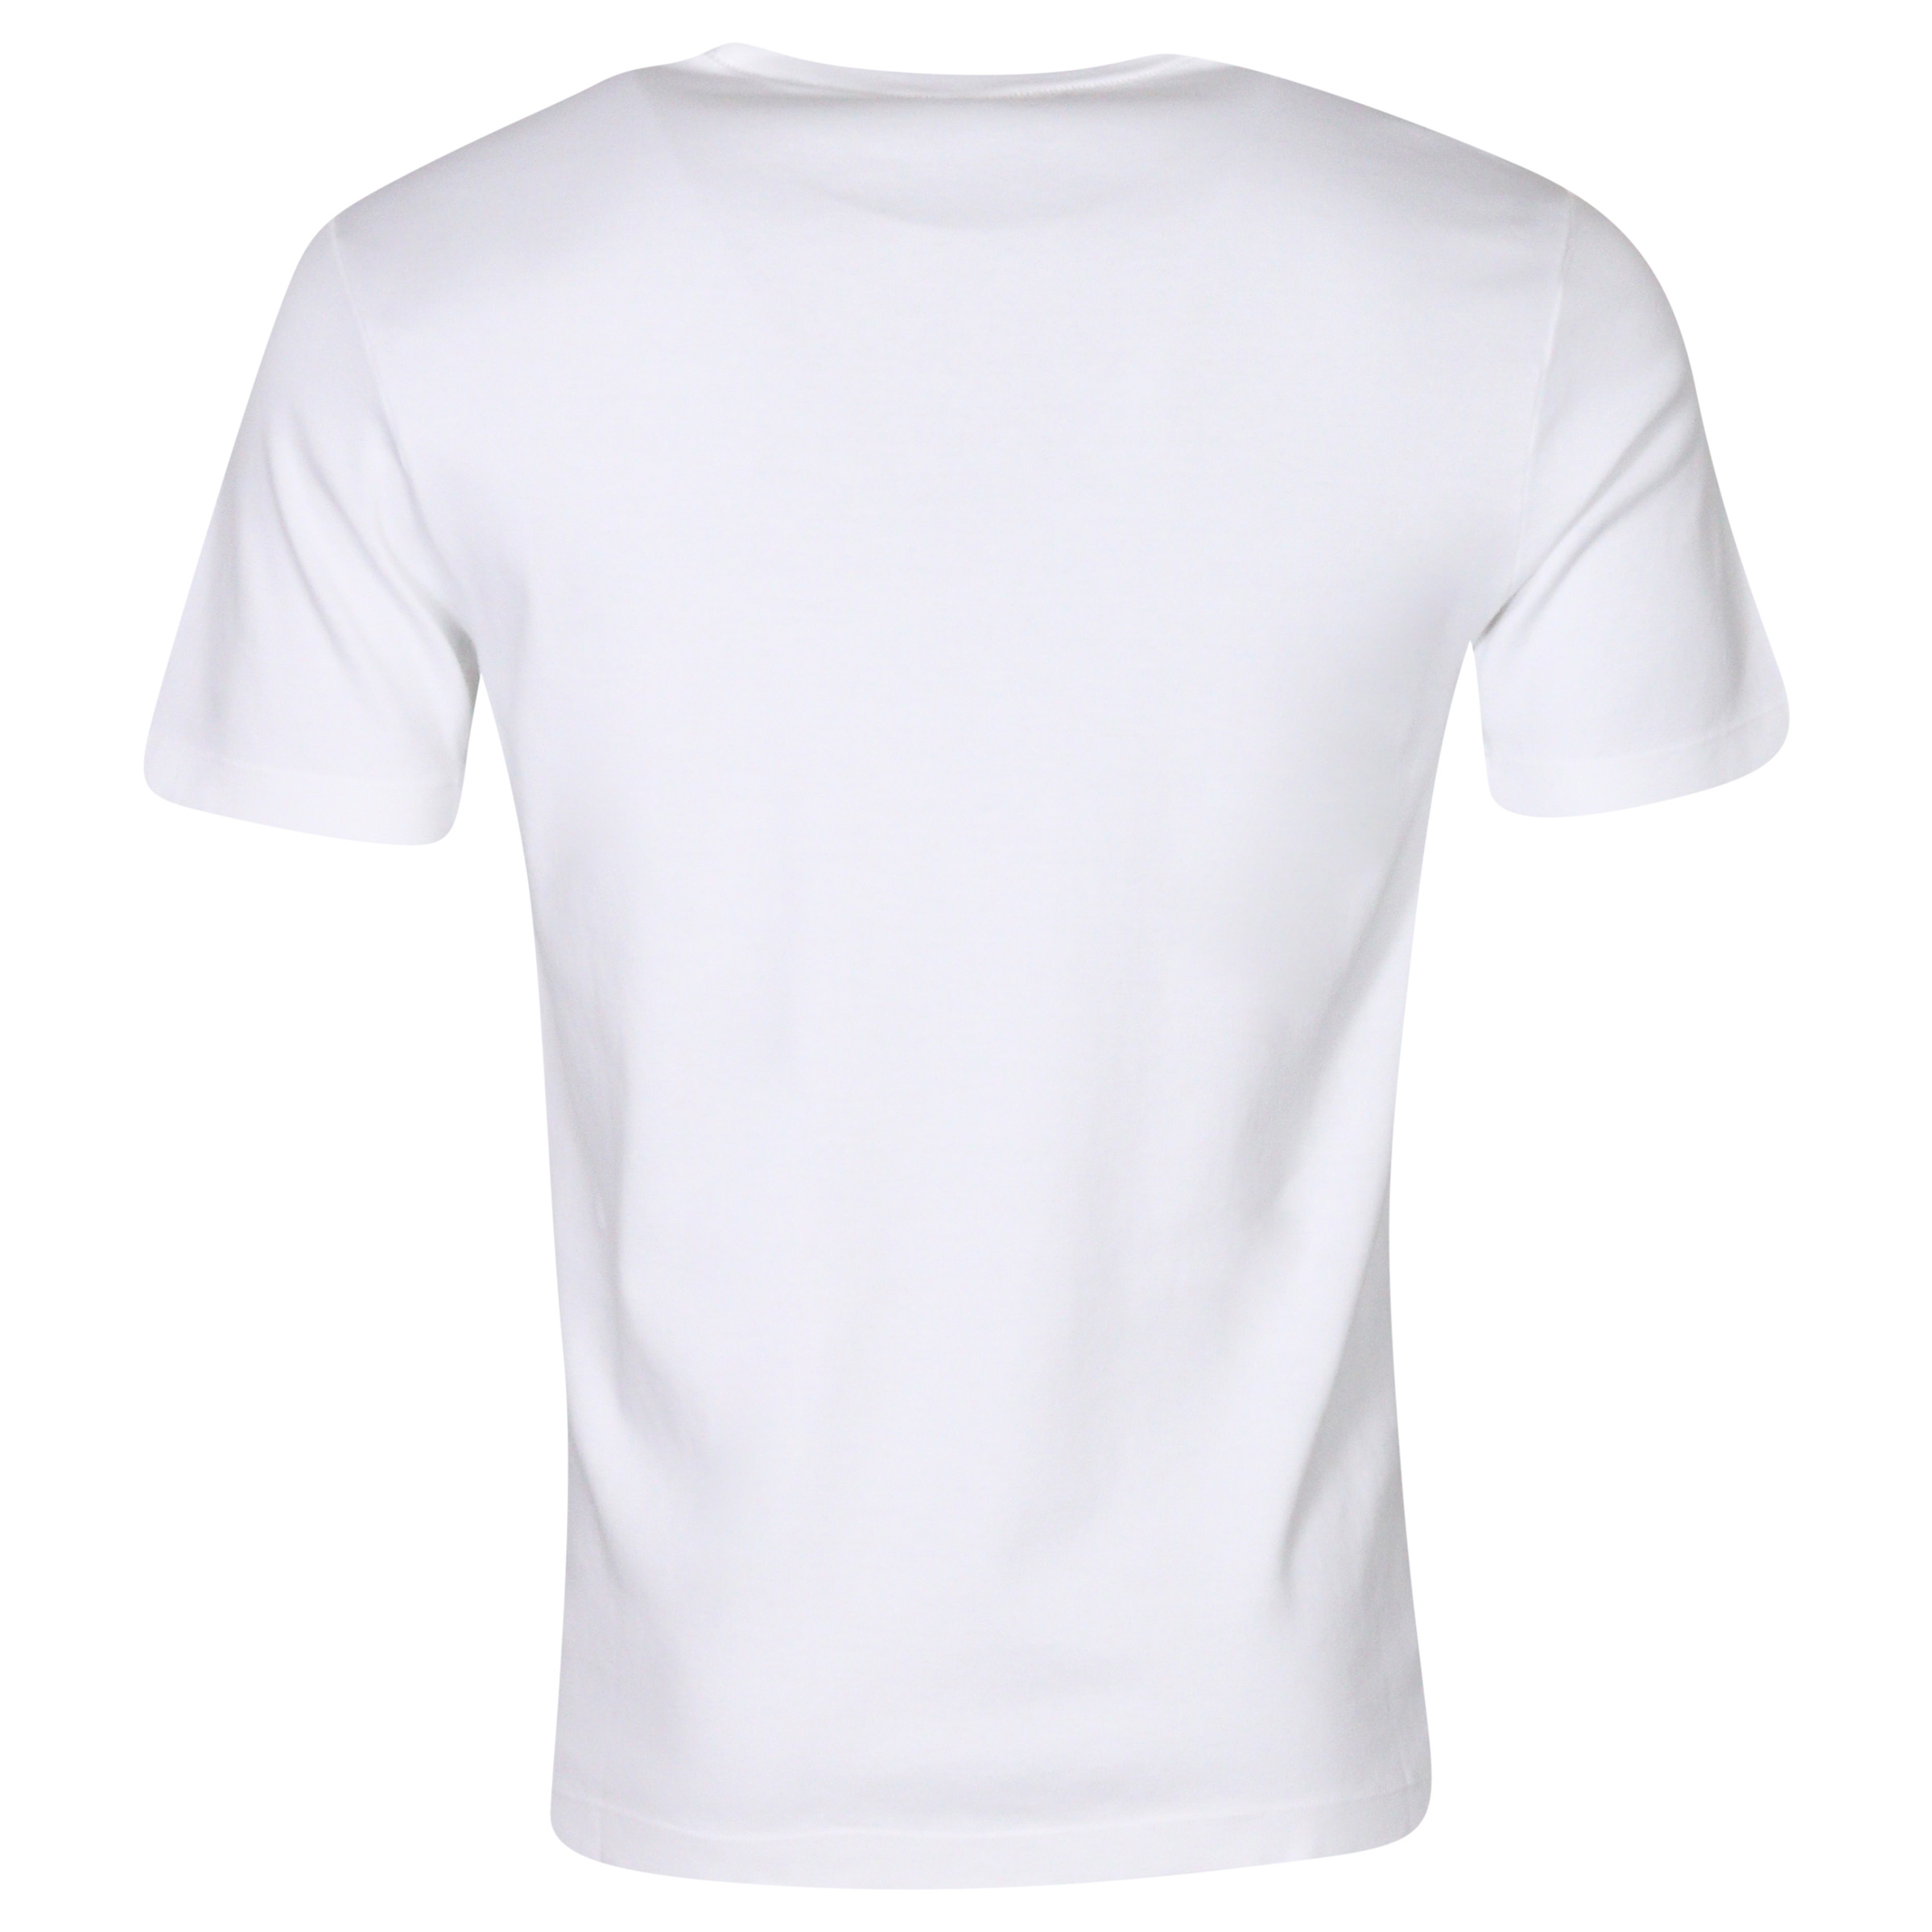 Transit Uomo Cotton T-Shirt Offwhite M